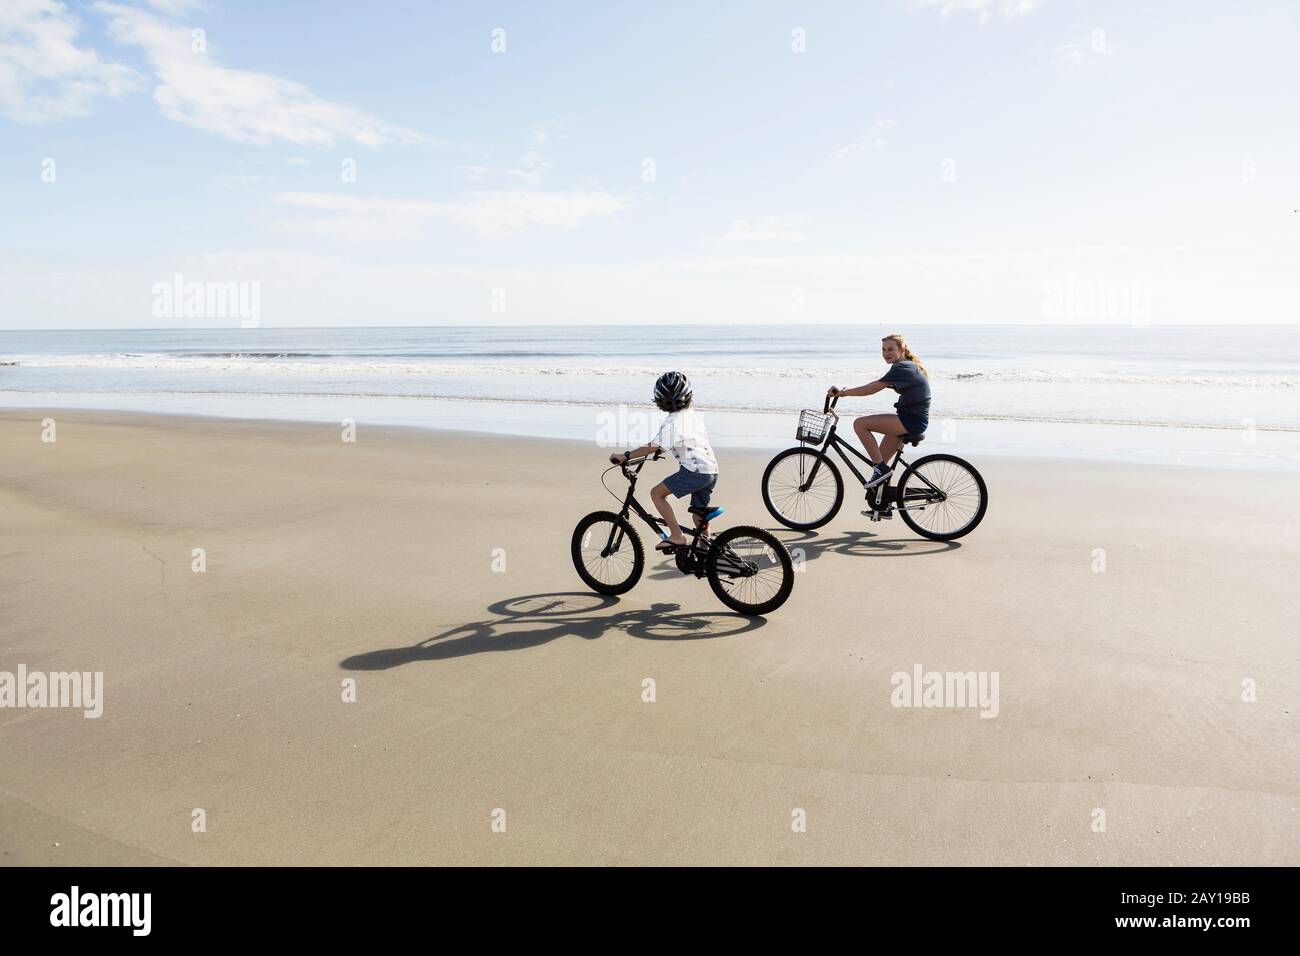 Hermanos, un niño y una niña que pedalan en bicicleta en una playa. Foto de stock